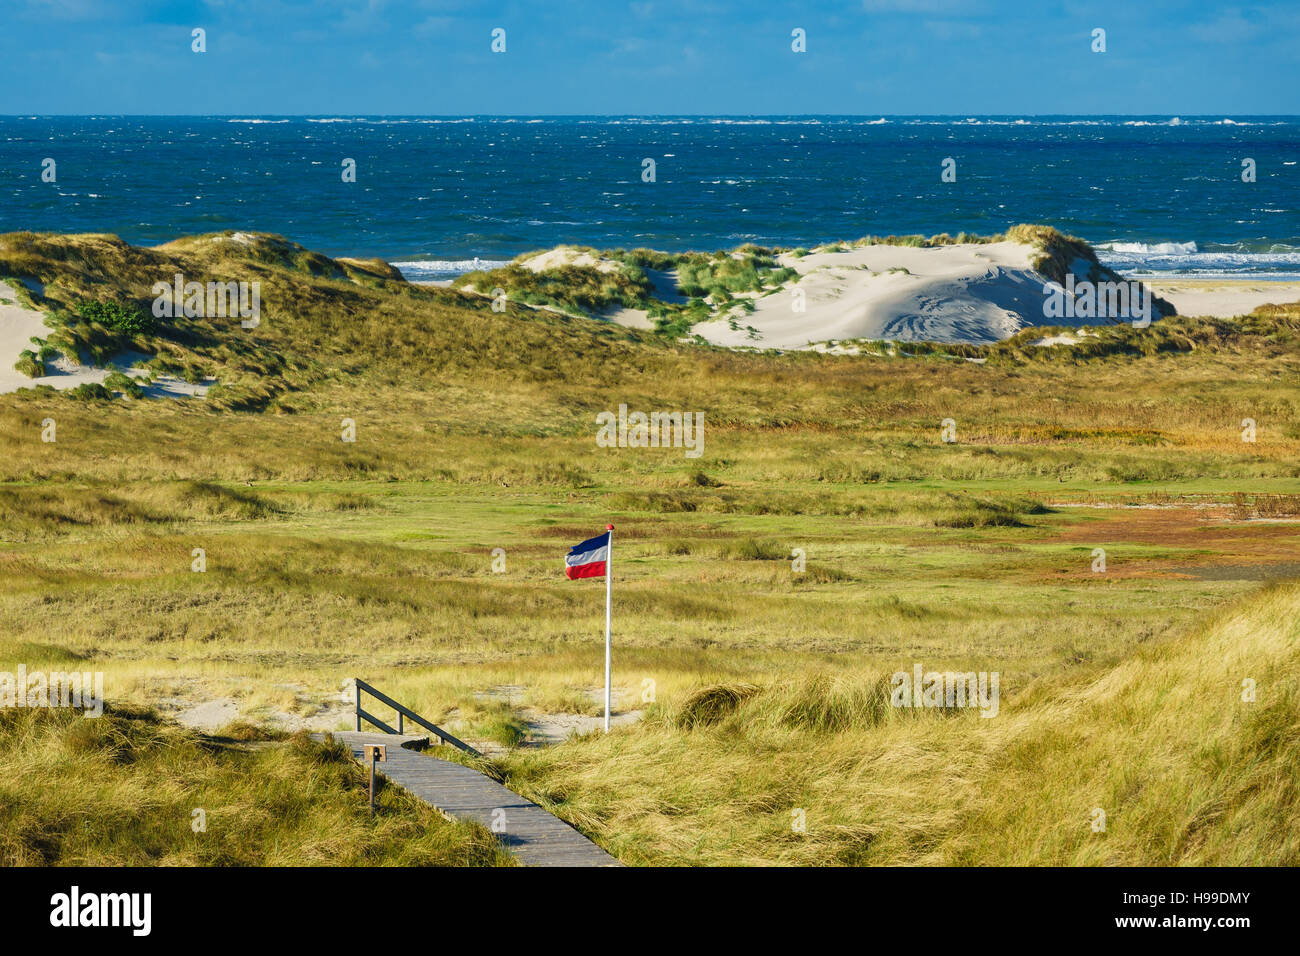 Dunes sur la côte de la mer du Nord sur l'île Amrum, Allemagne Banque D'Images